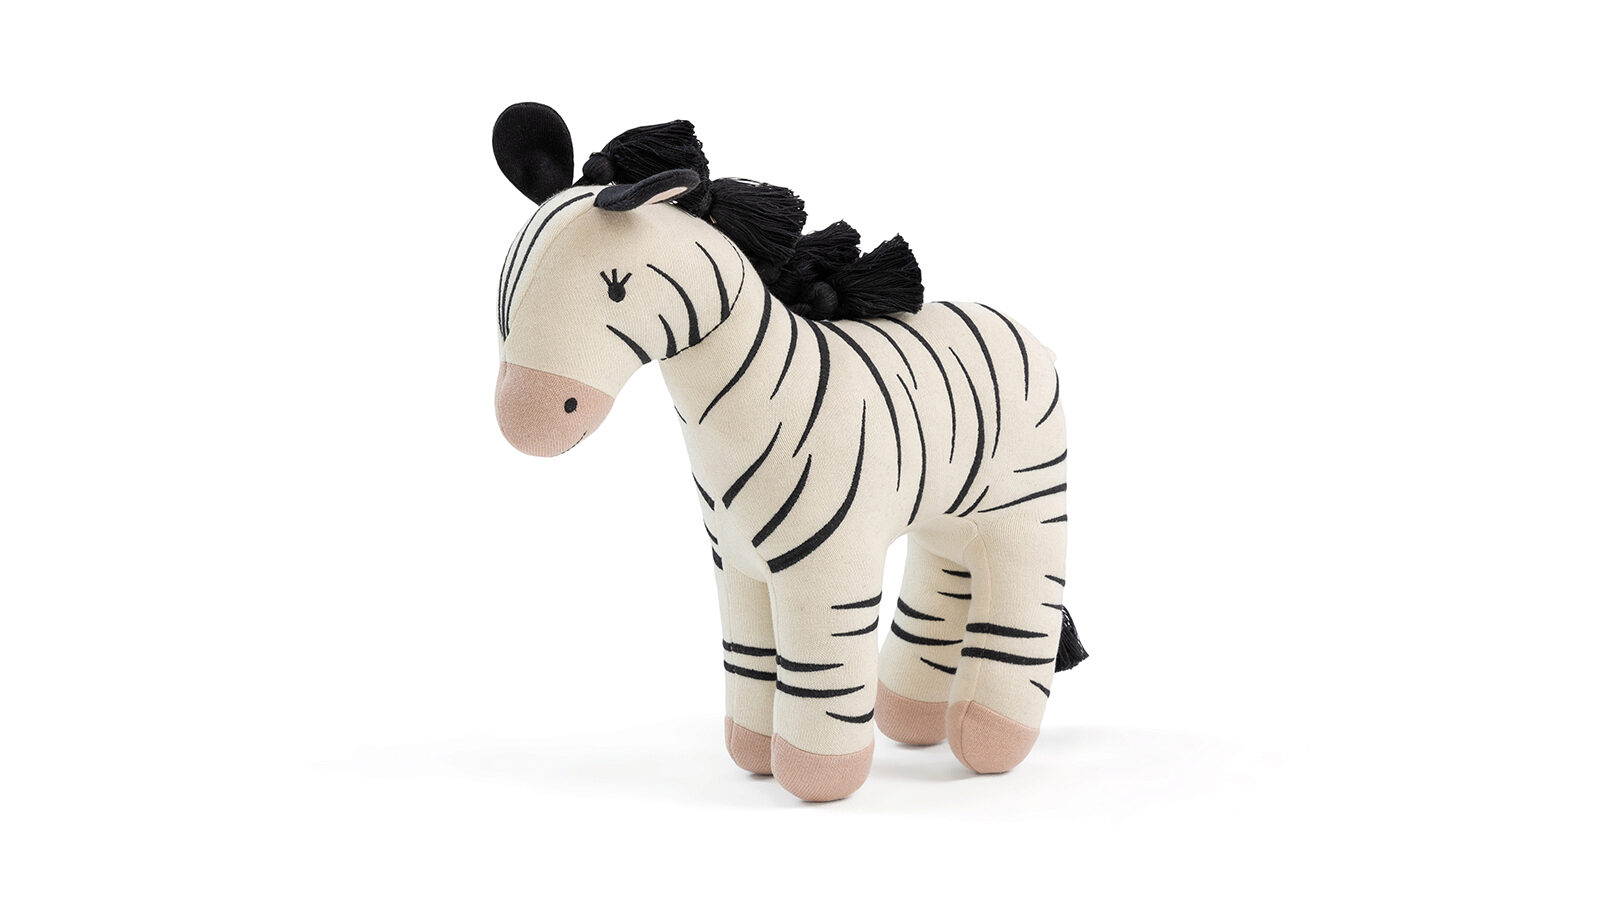 Игрушка Zebra девичья игрушка